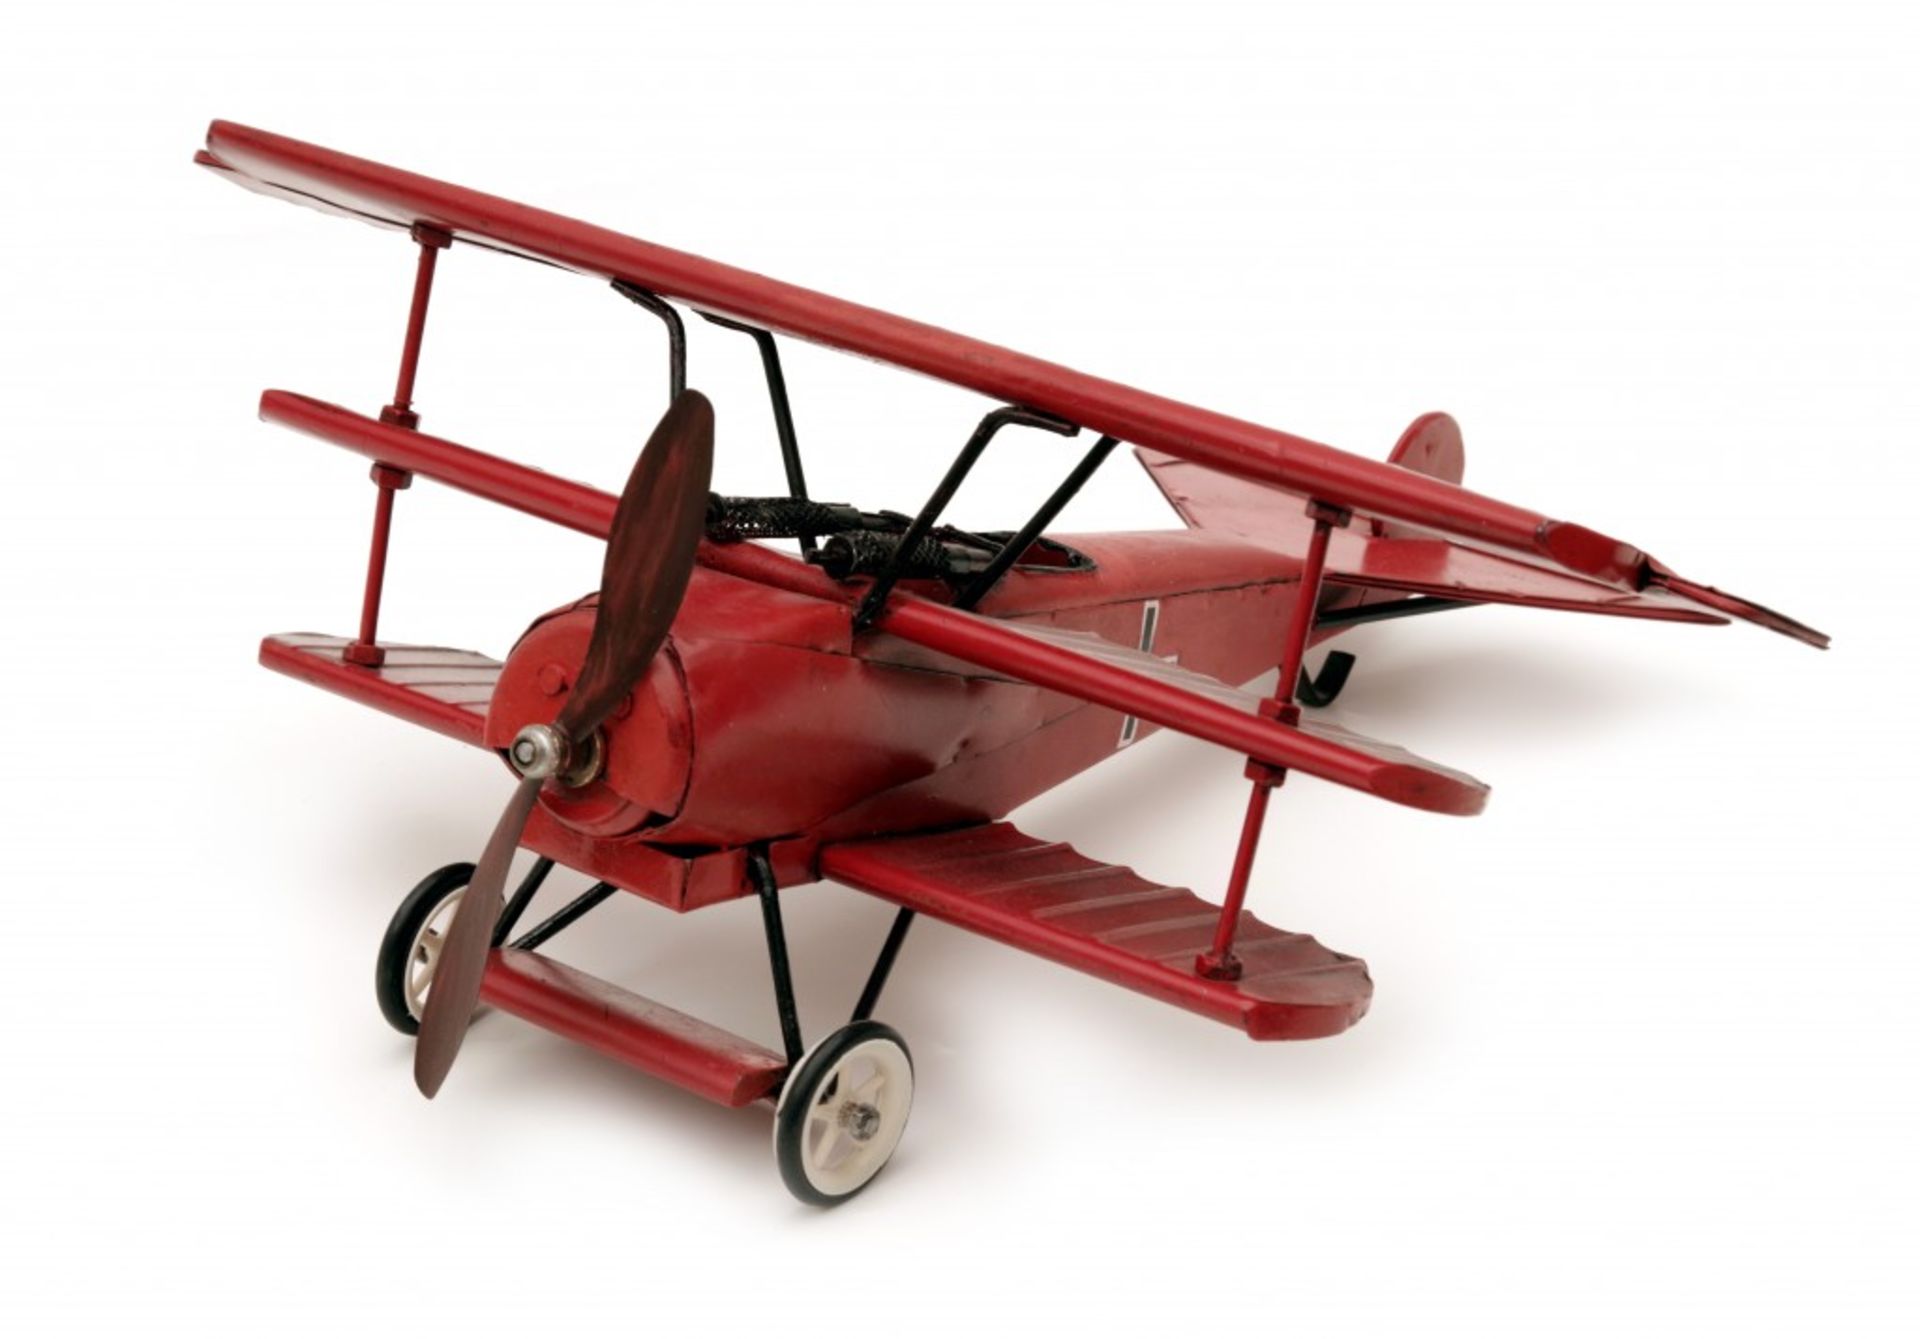 The Fokker Dr.I Dreidecker Plane - Red Baron - Image 4 of 4